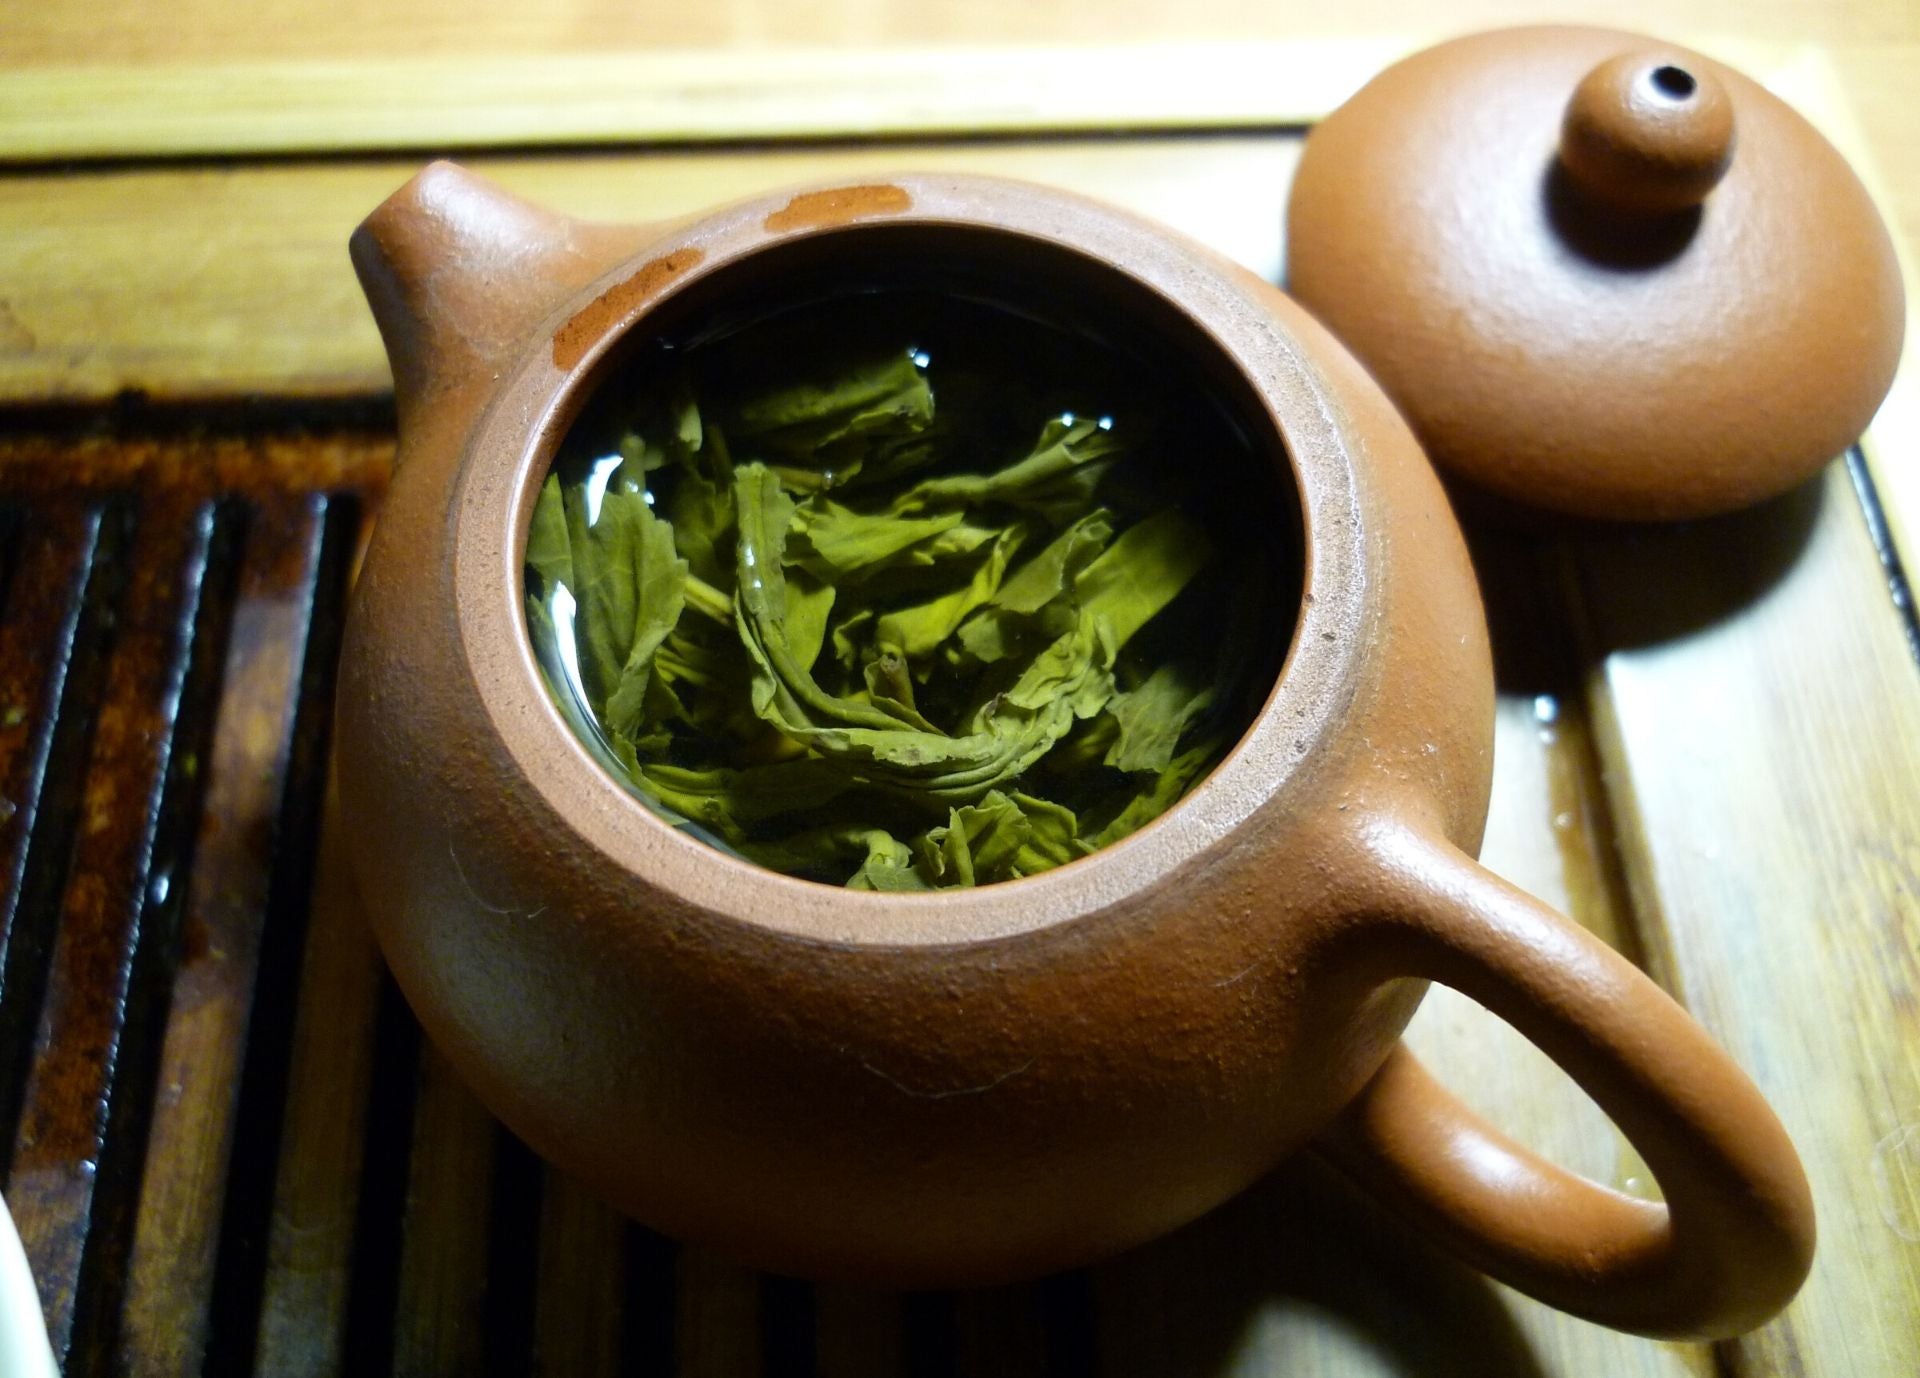 Cuillère pour le thé – Inox – Camellia sinensis